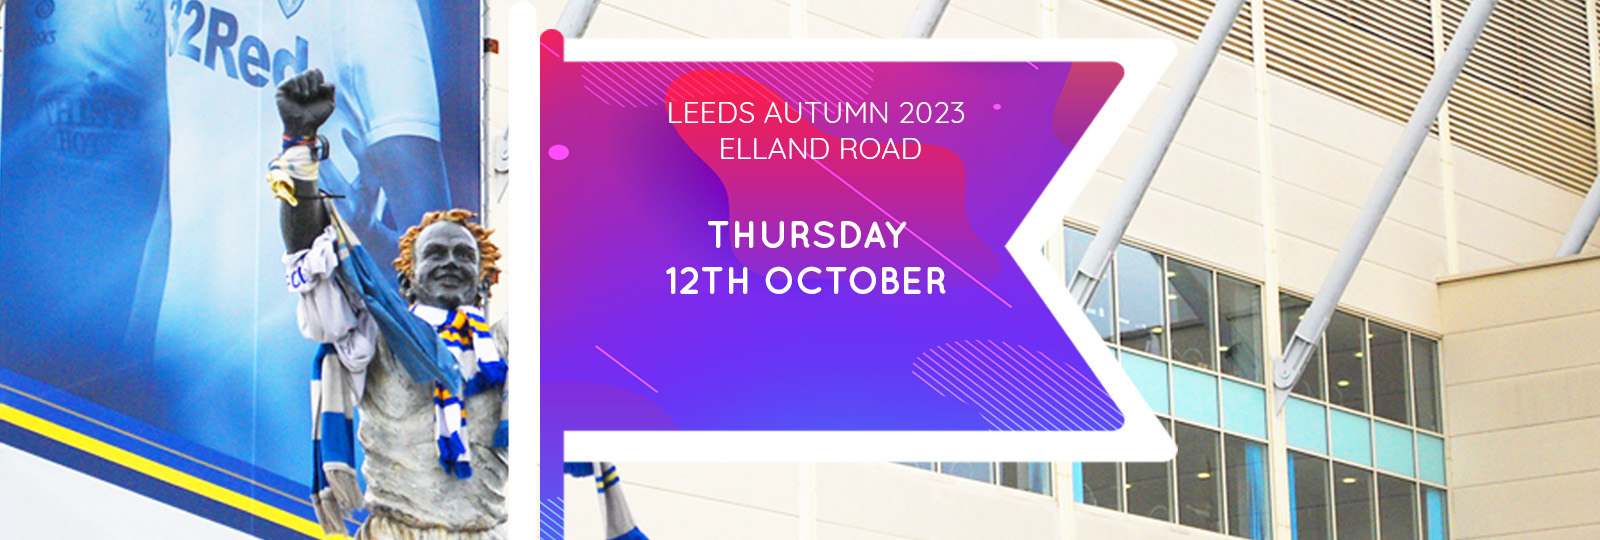 Leeds Autumn 2023 Fair